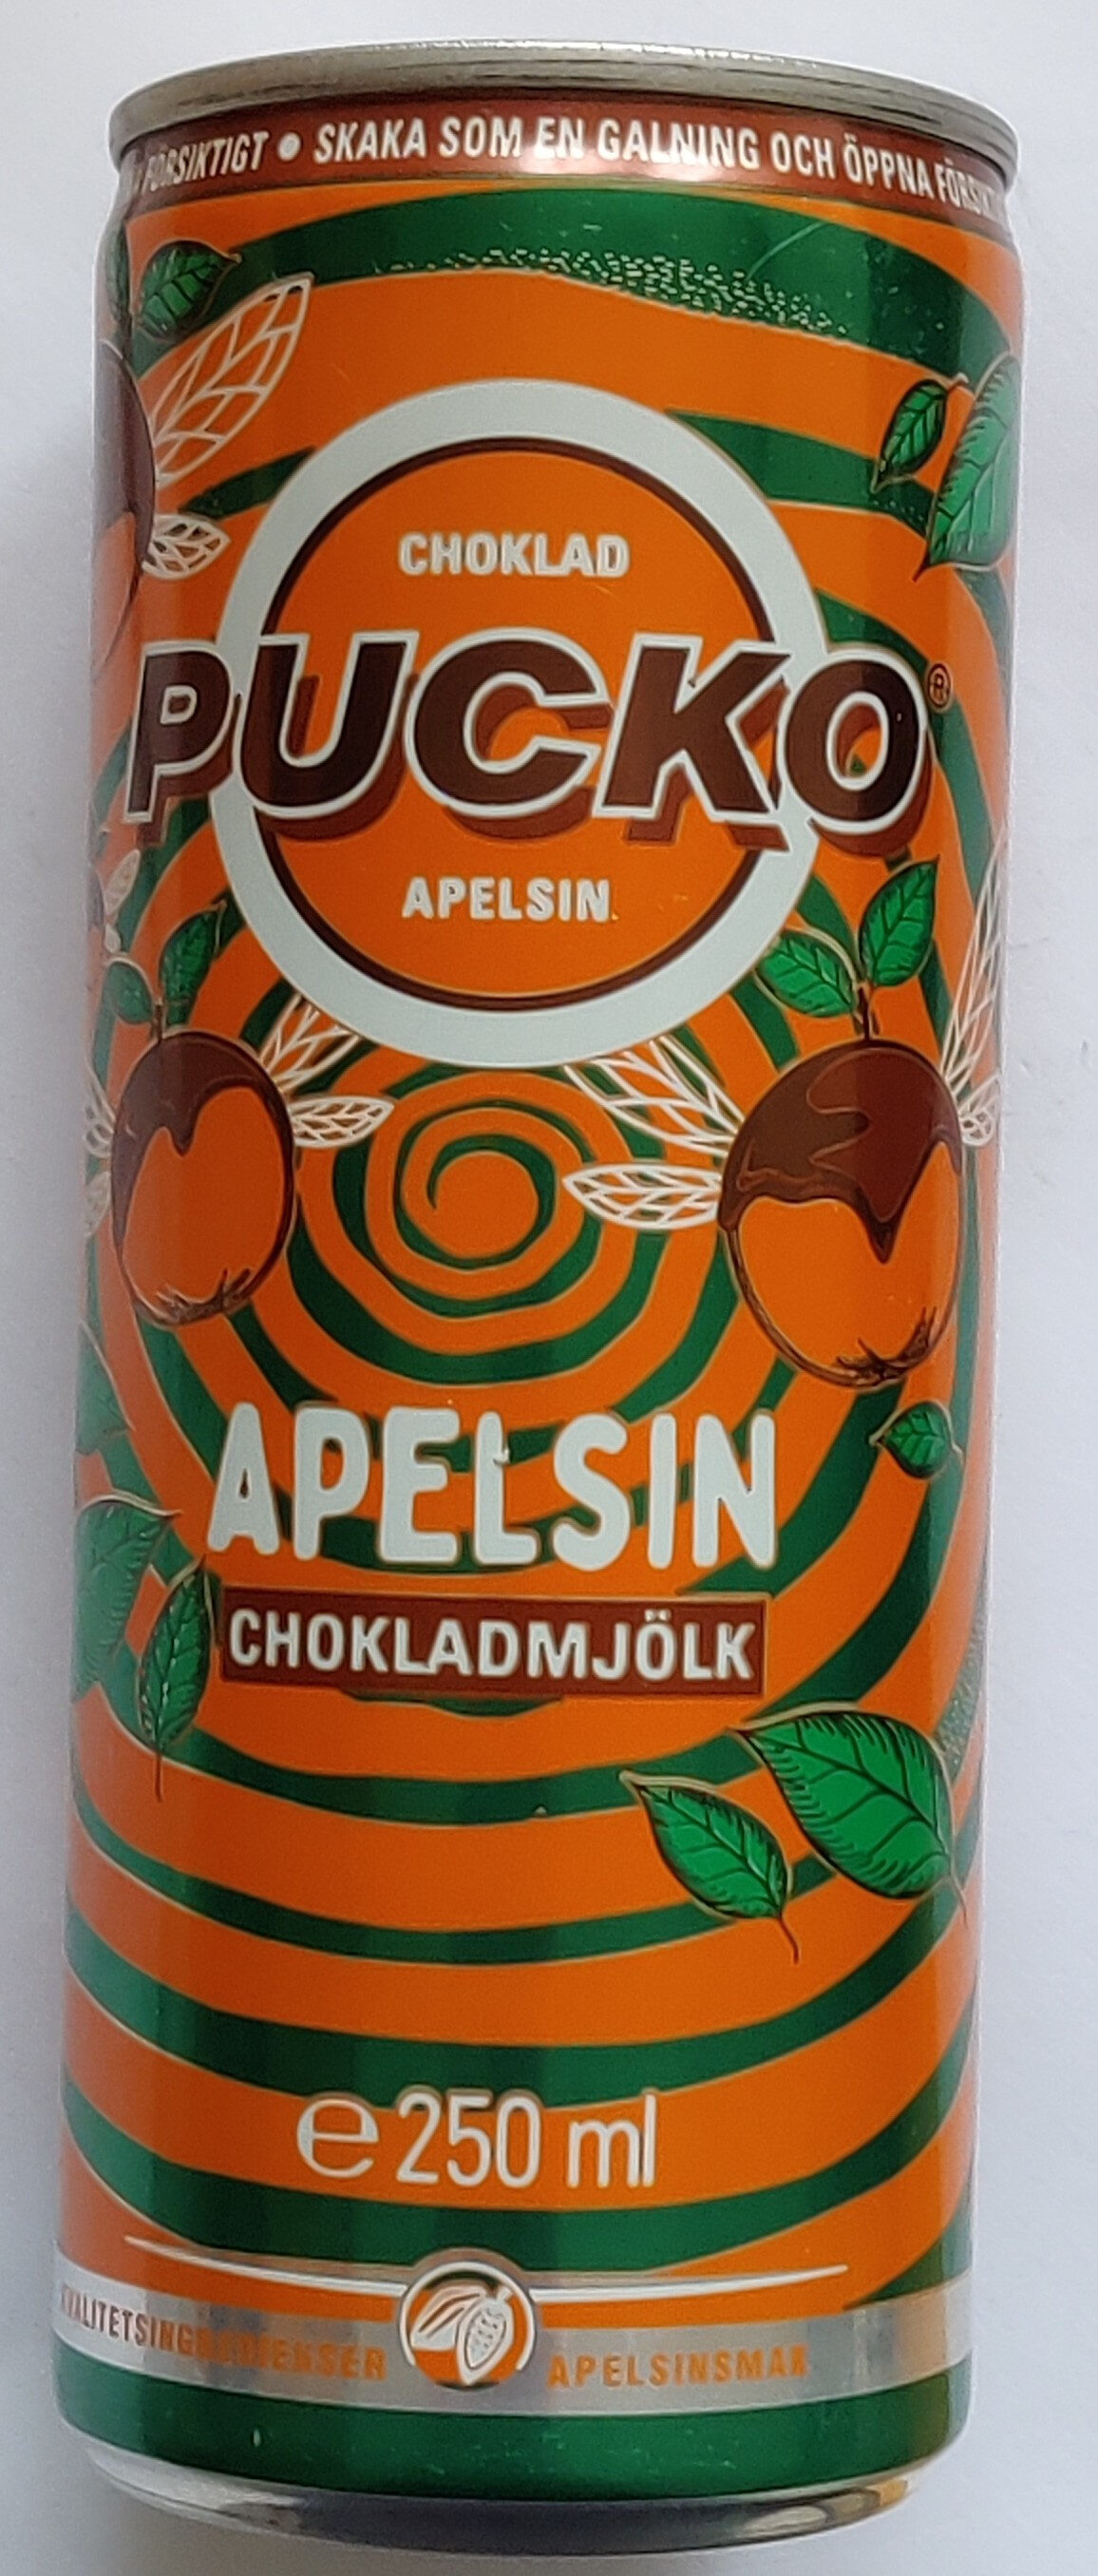 Pucko Apelsin - Produkt